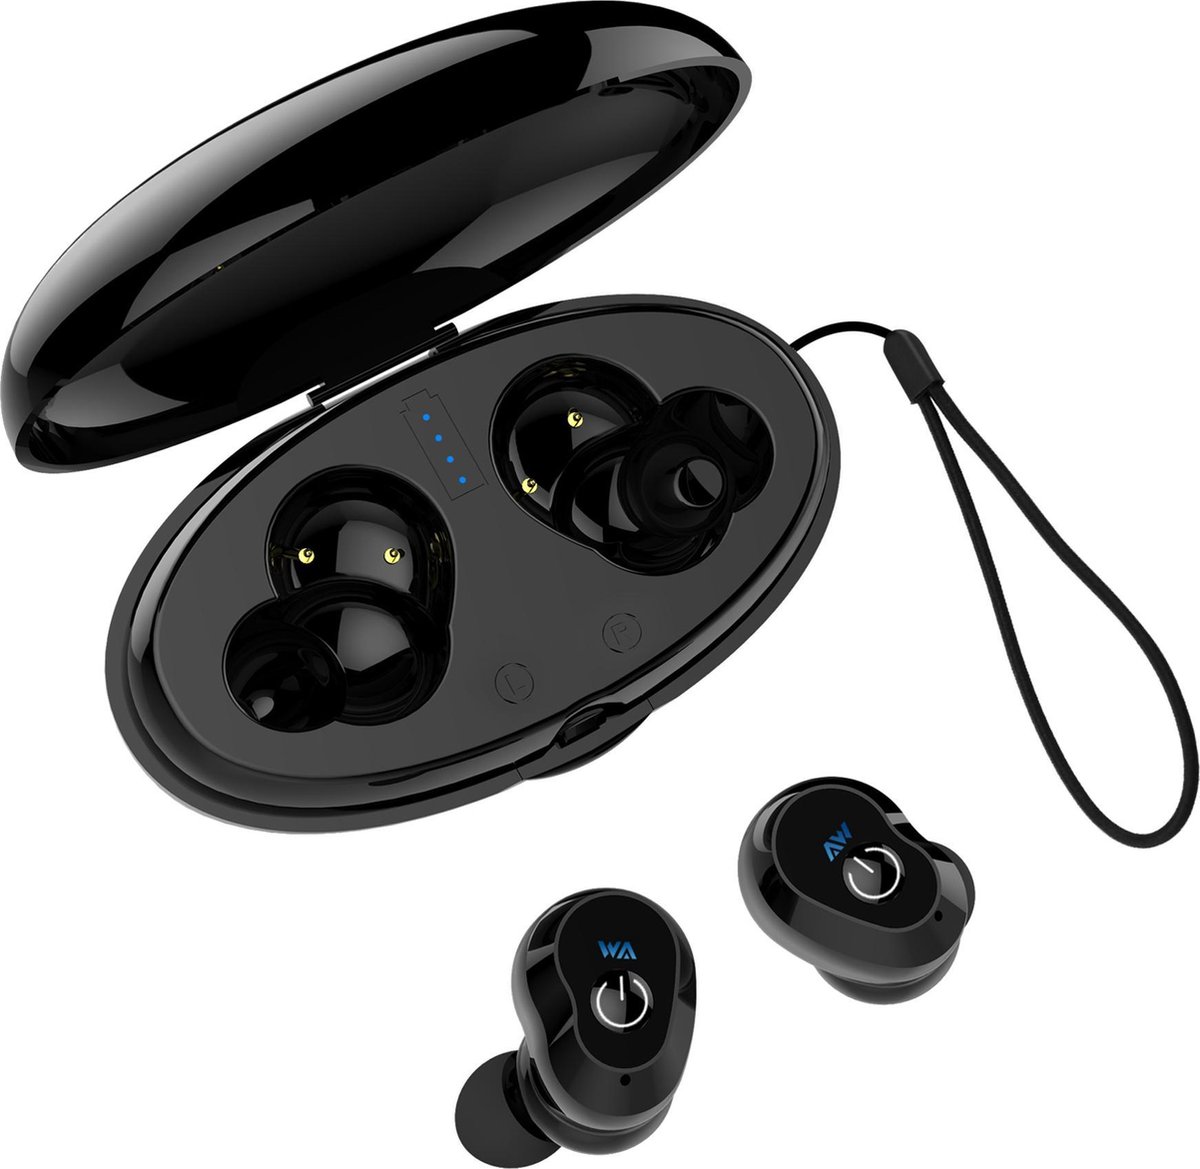 Lipa AE-R14A bluetooth headphone / Bluetooth 5.0 / Sterke bass / Met oplaad case / 10 uur speeltijd achter elkaar / Met microfoon en telefoonknop